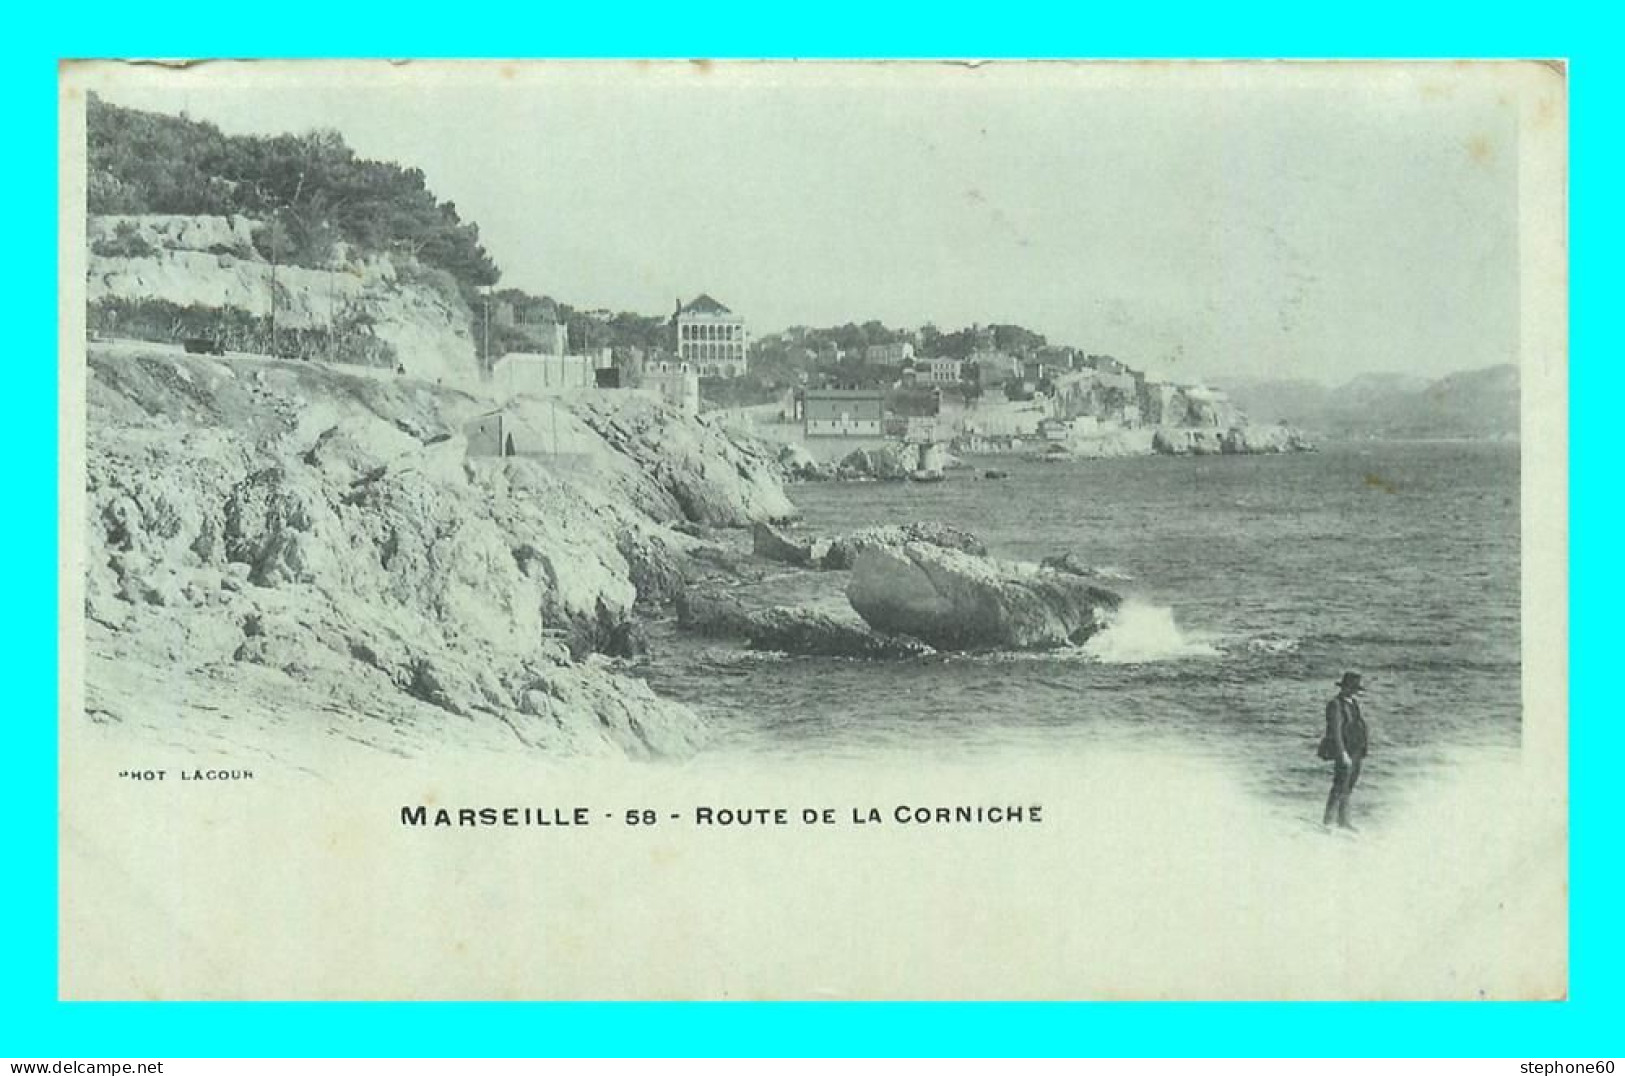 A843 / 433 13 - MARSEILLE Route De La Corniche - Unclassified